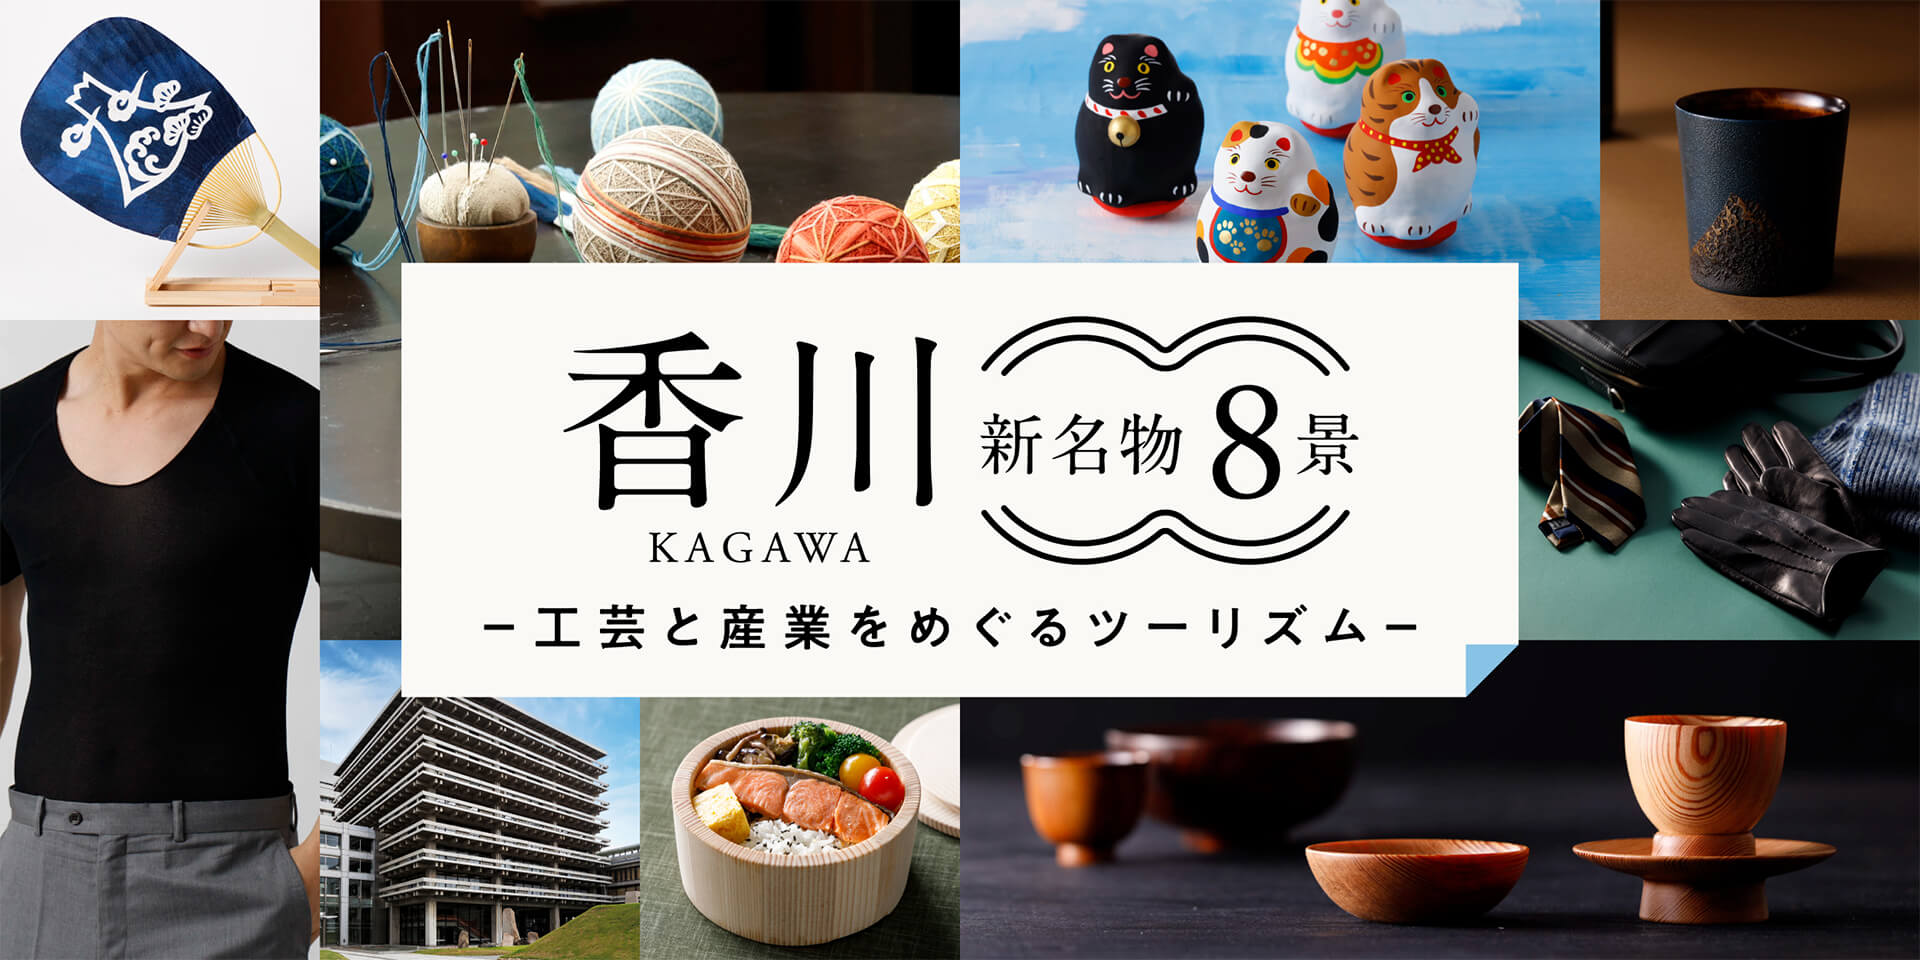 香川「新名物8景」工芸と産業をめぐるツーリズム2022